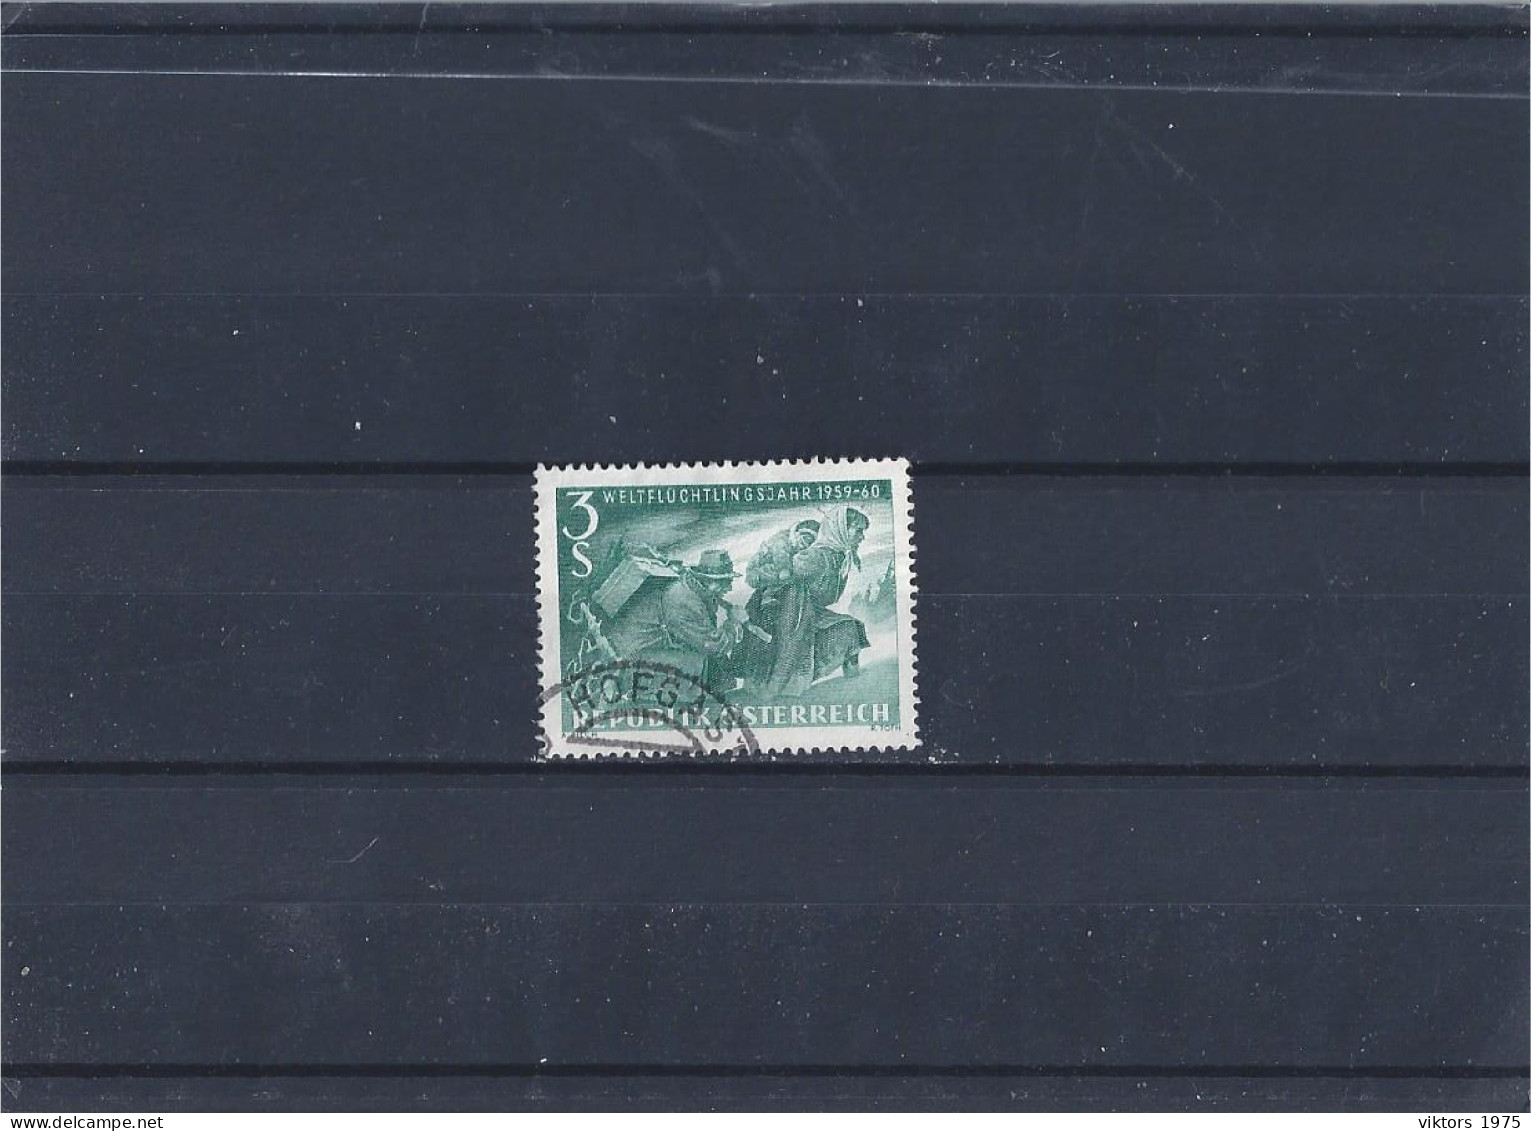 Used Stamp Nr.1074 In MICHEL Catalog - Gebruikt